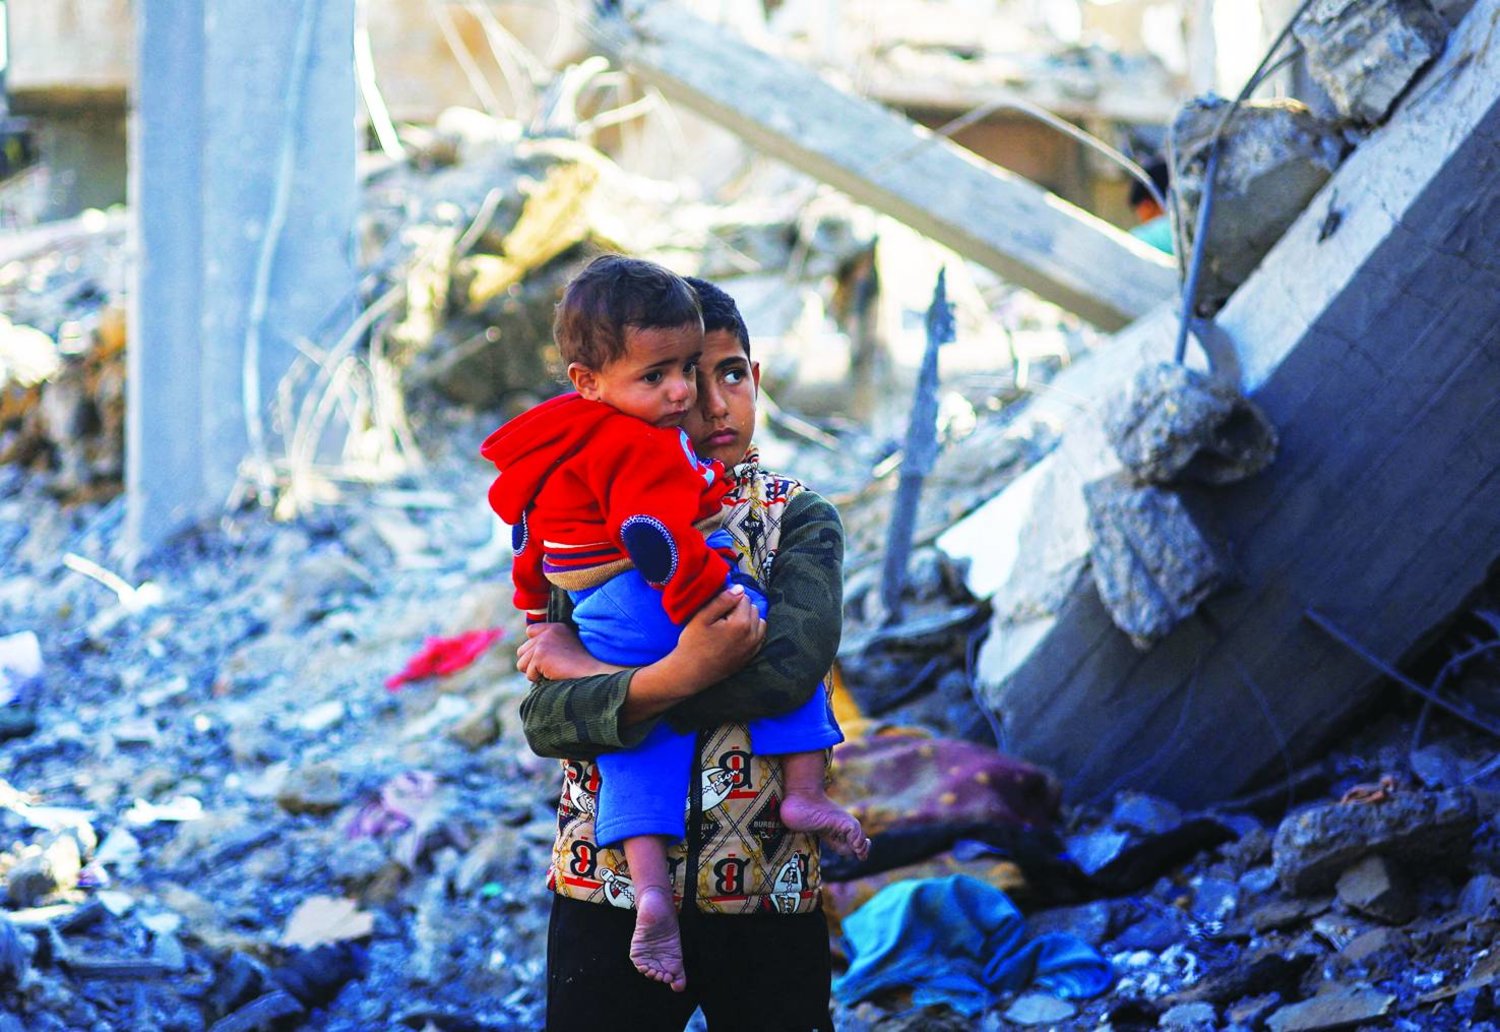 
صبي فلسطيني يحمل طفلاً وسط ركام منزل دمره قصف إسرائيلي في رفح جنوب قطاع غزة (رويترز)